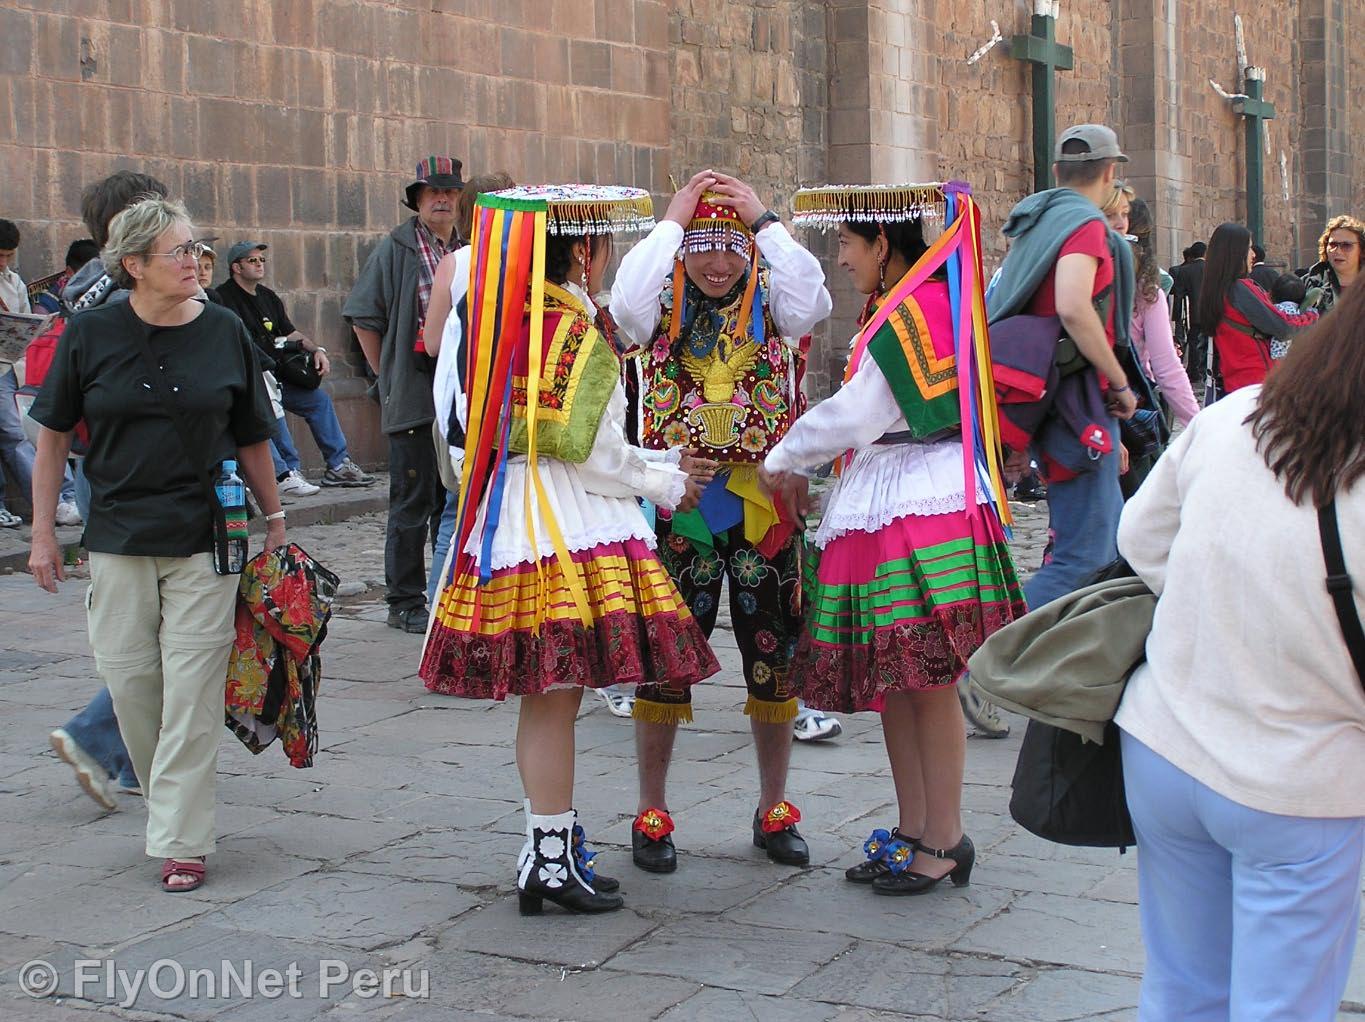 Álbum de fotos: Bailarinas en Cusco